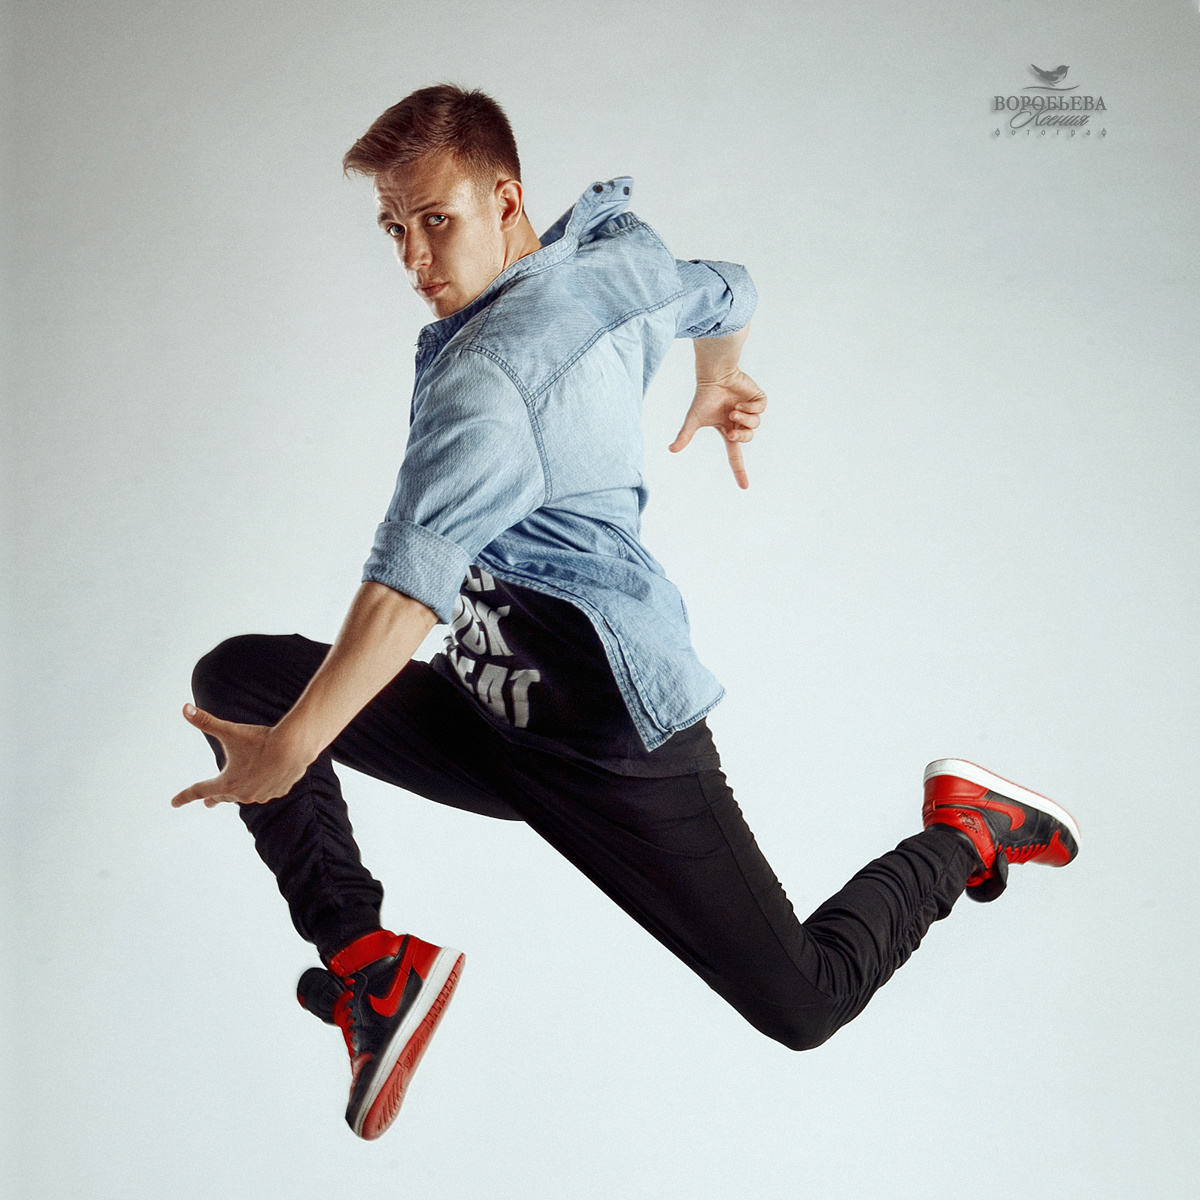 Костя танец парень мода джаз фанк вог хип-хоп танцы танцор прыжок движение красота тело сила